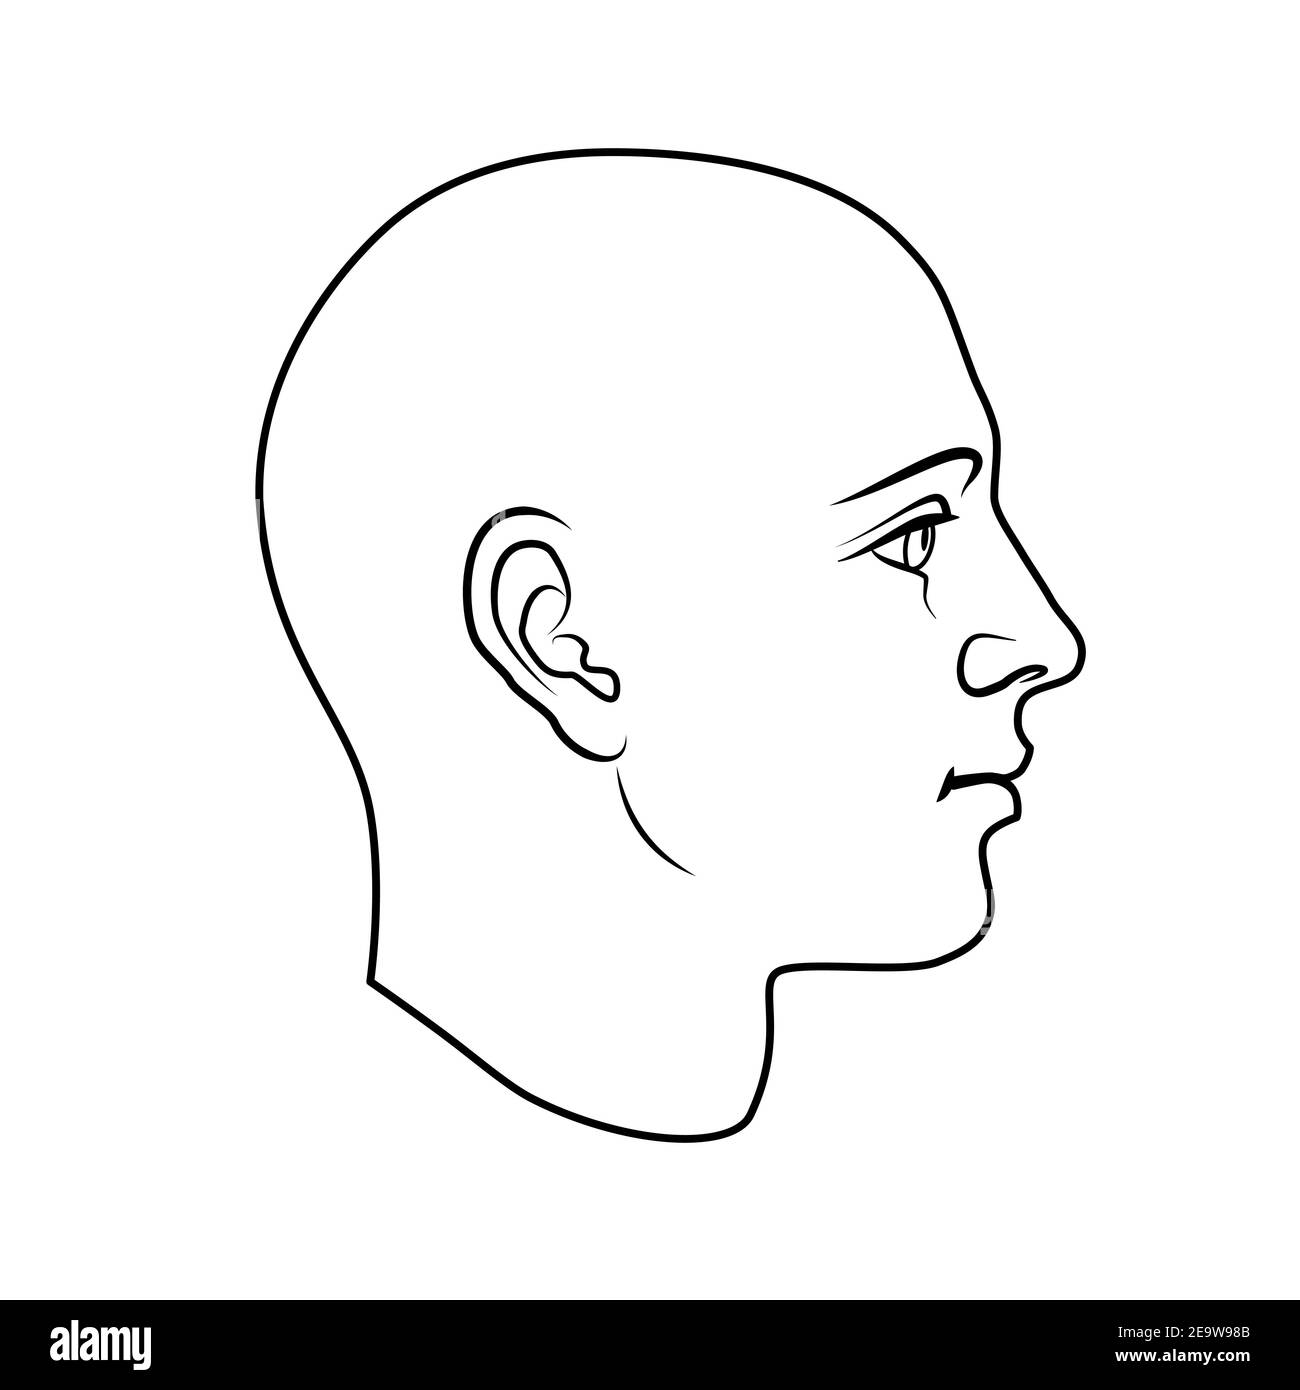 Modello disegnato a mano della testa umana in vista laterale. Disegno vettoriale piatto con contorno bianco e nero isolato su sfondo bianco. EPS 8. Illustrazione Vettoriale